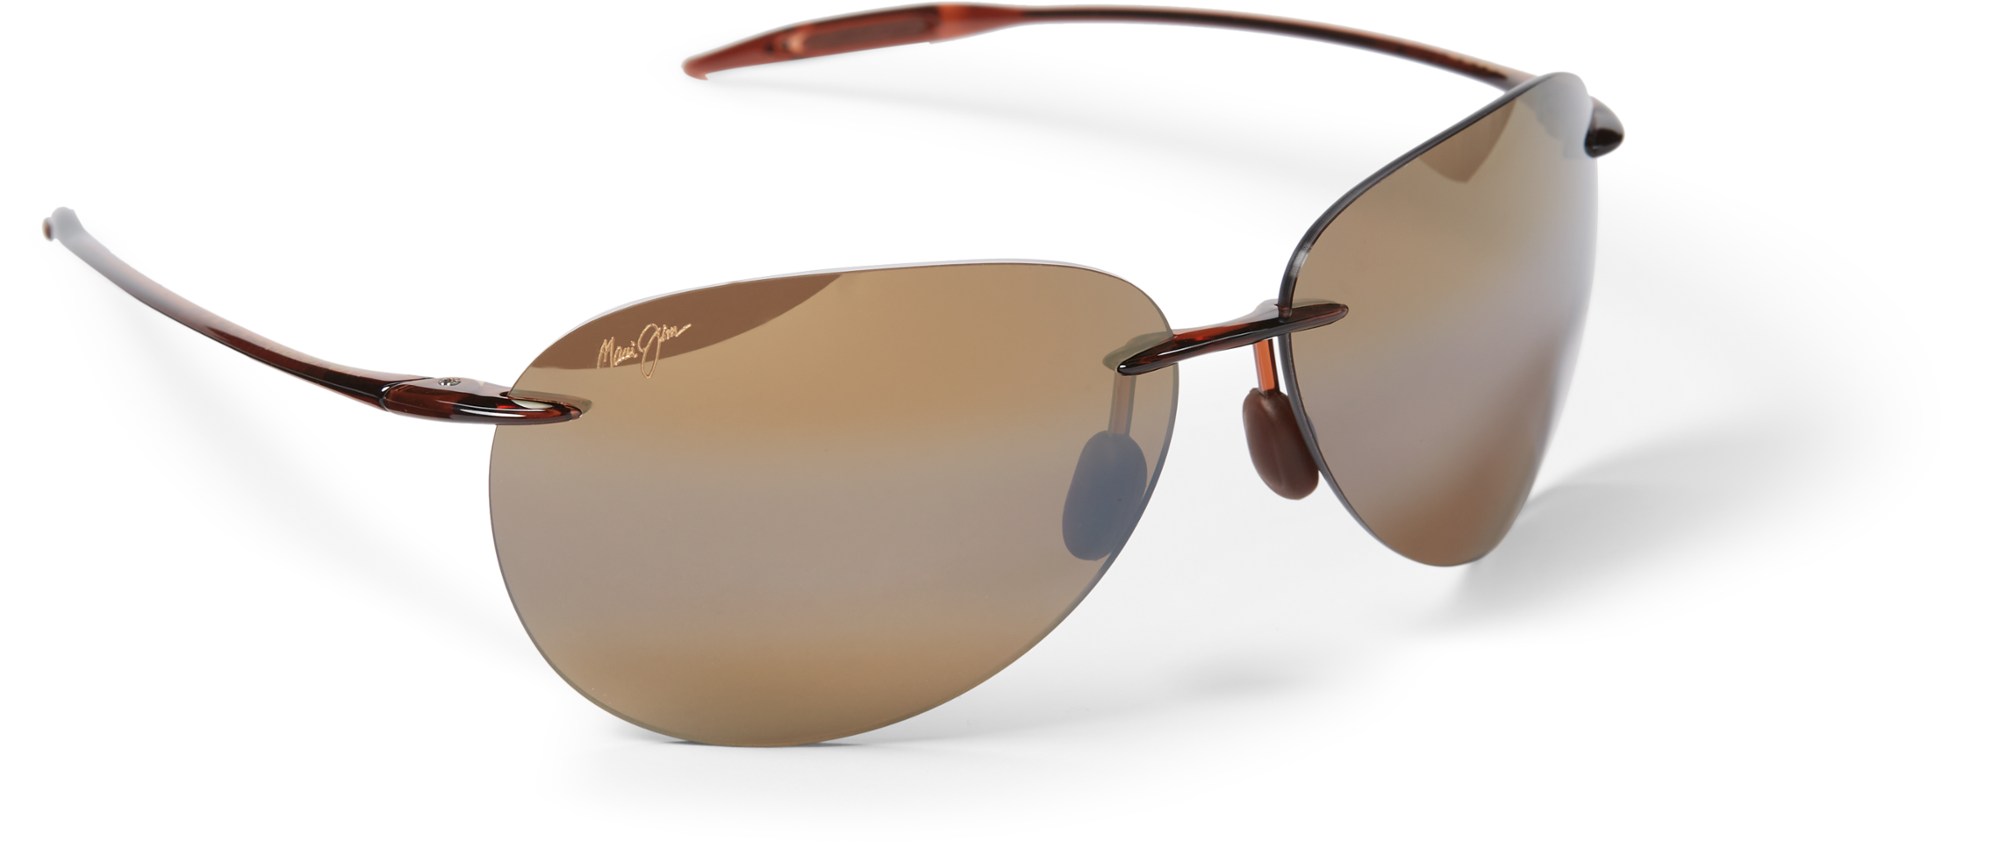 Поляризованные солнцезащитные очки Sugar Beach Maui Jim, коричневый al khalili jim gravity